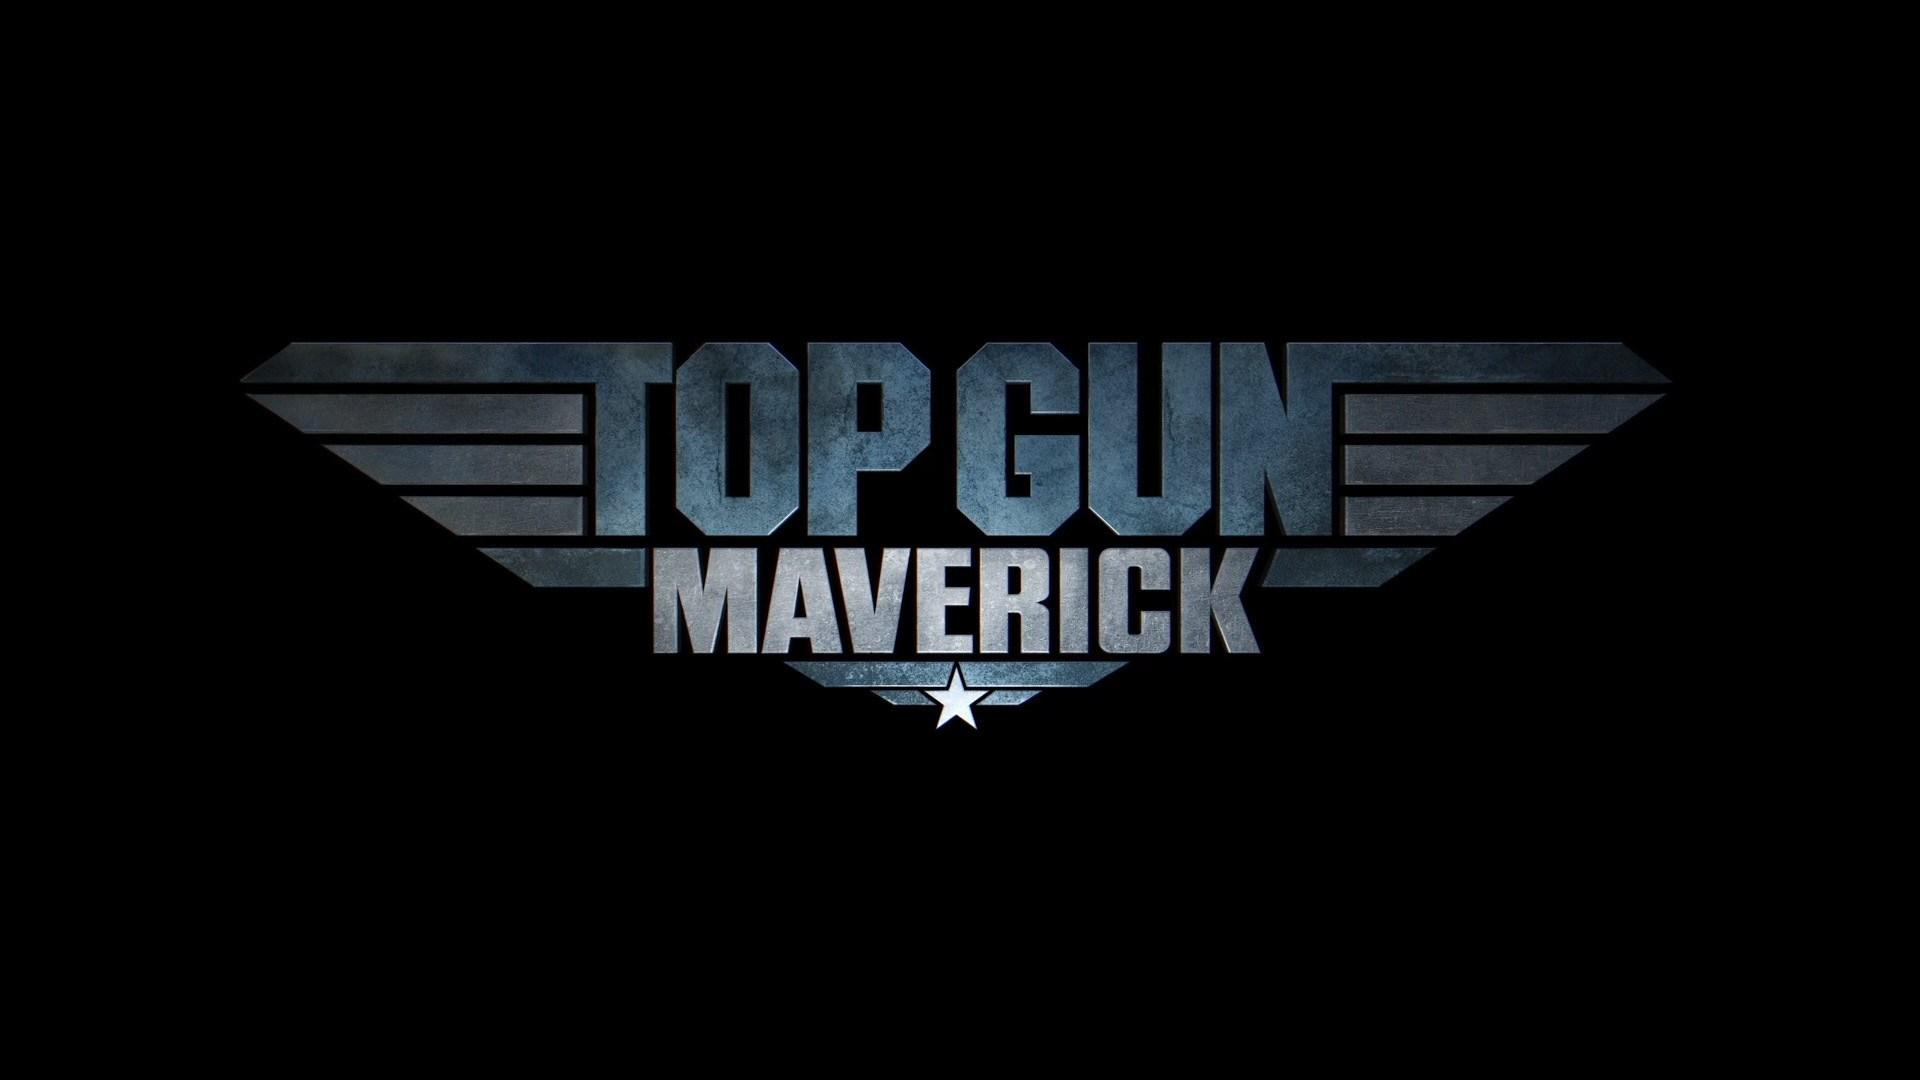 Top Gun: Maverick for mac download free